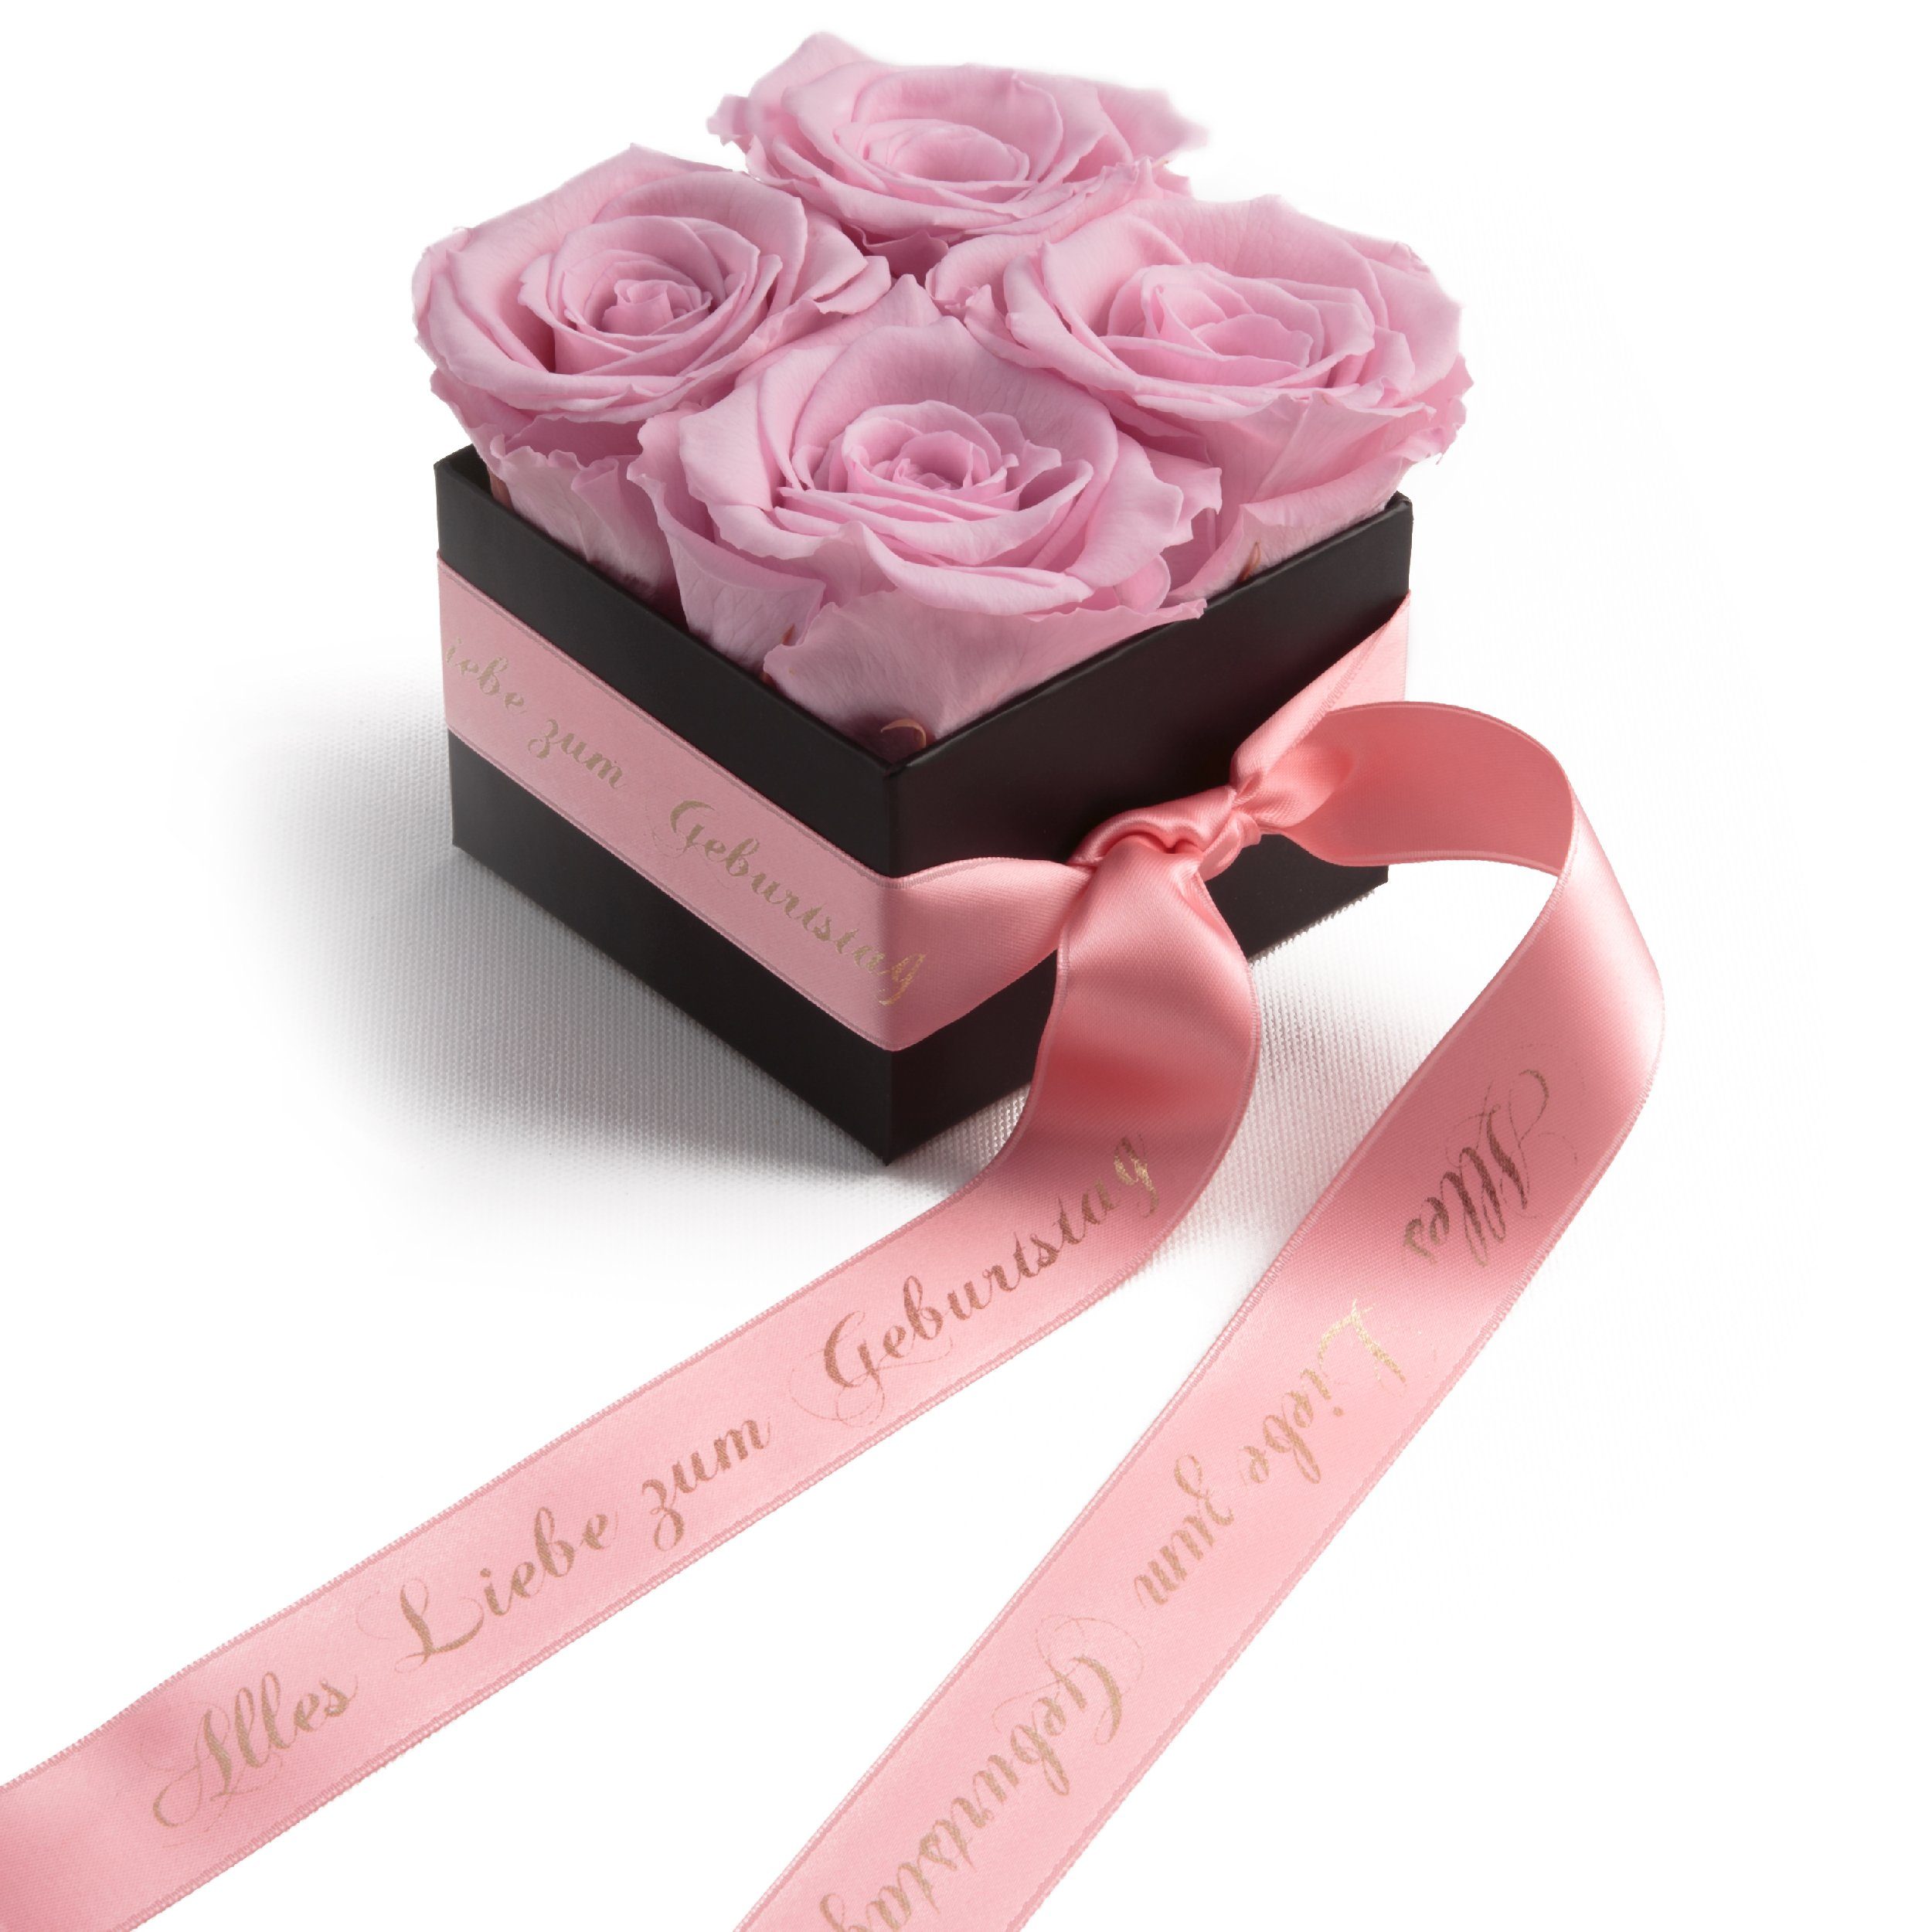 Alles zum Rosa Heidelberg Frauen St), für echte Liebe (1 Geburtstag konservierte Rosen Rosen Dekoobjekt Rosenbox SCHULZ Geschenk Echte ROSEMARIE